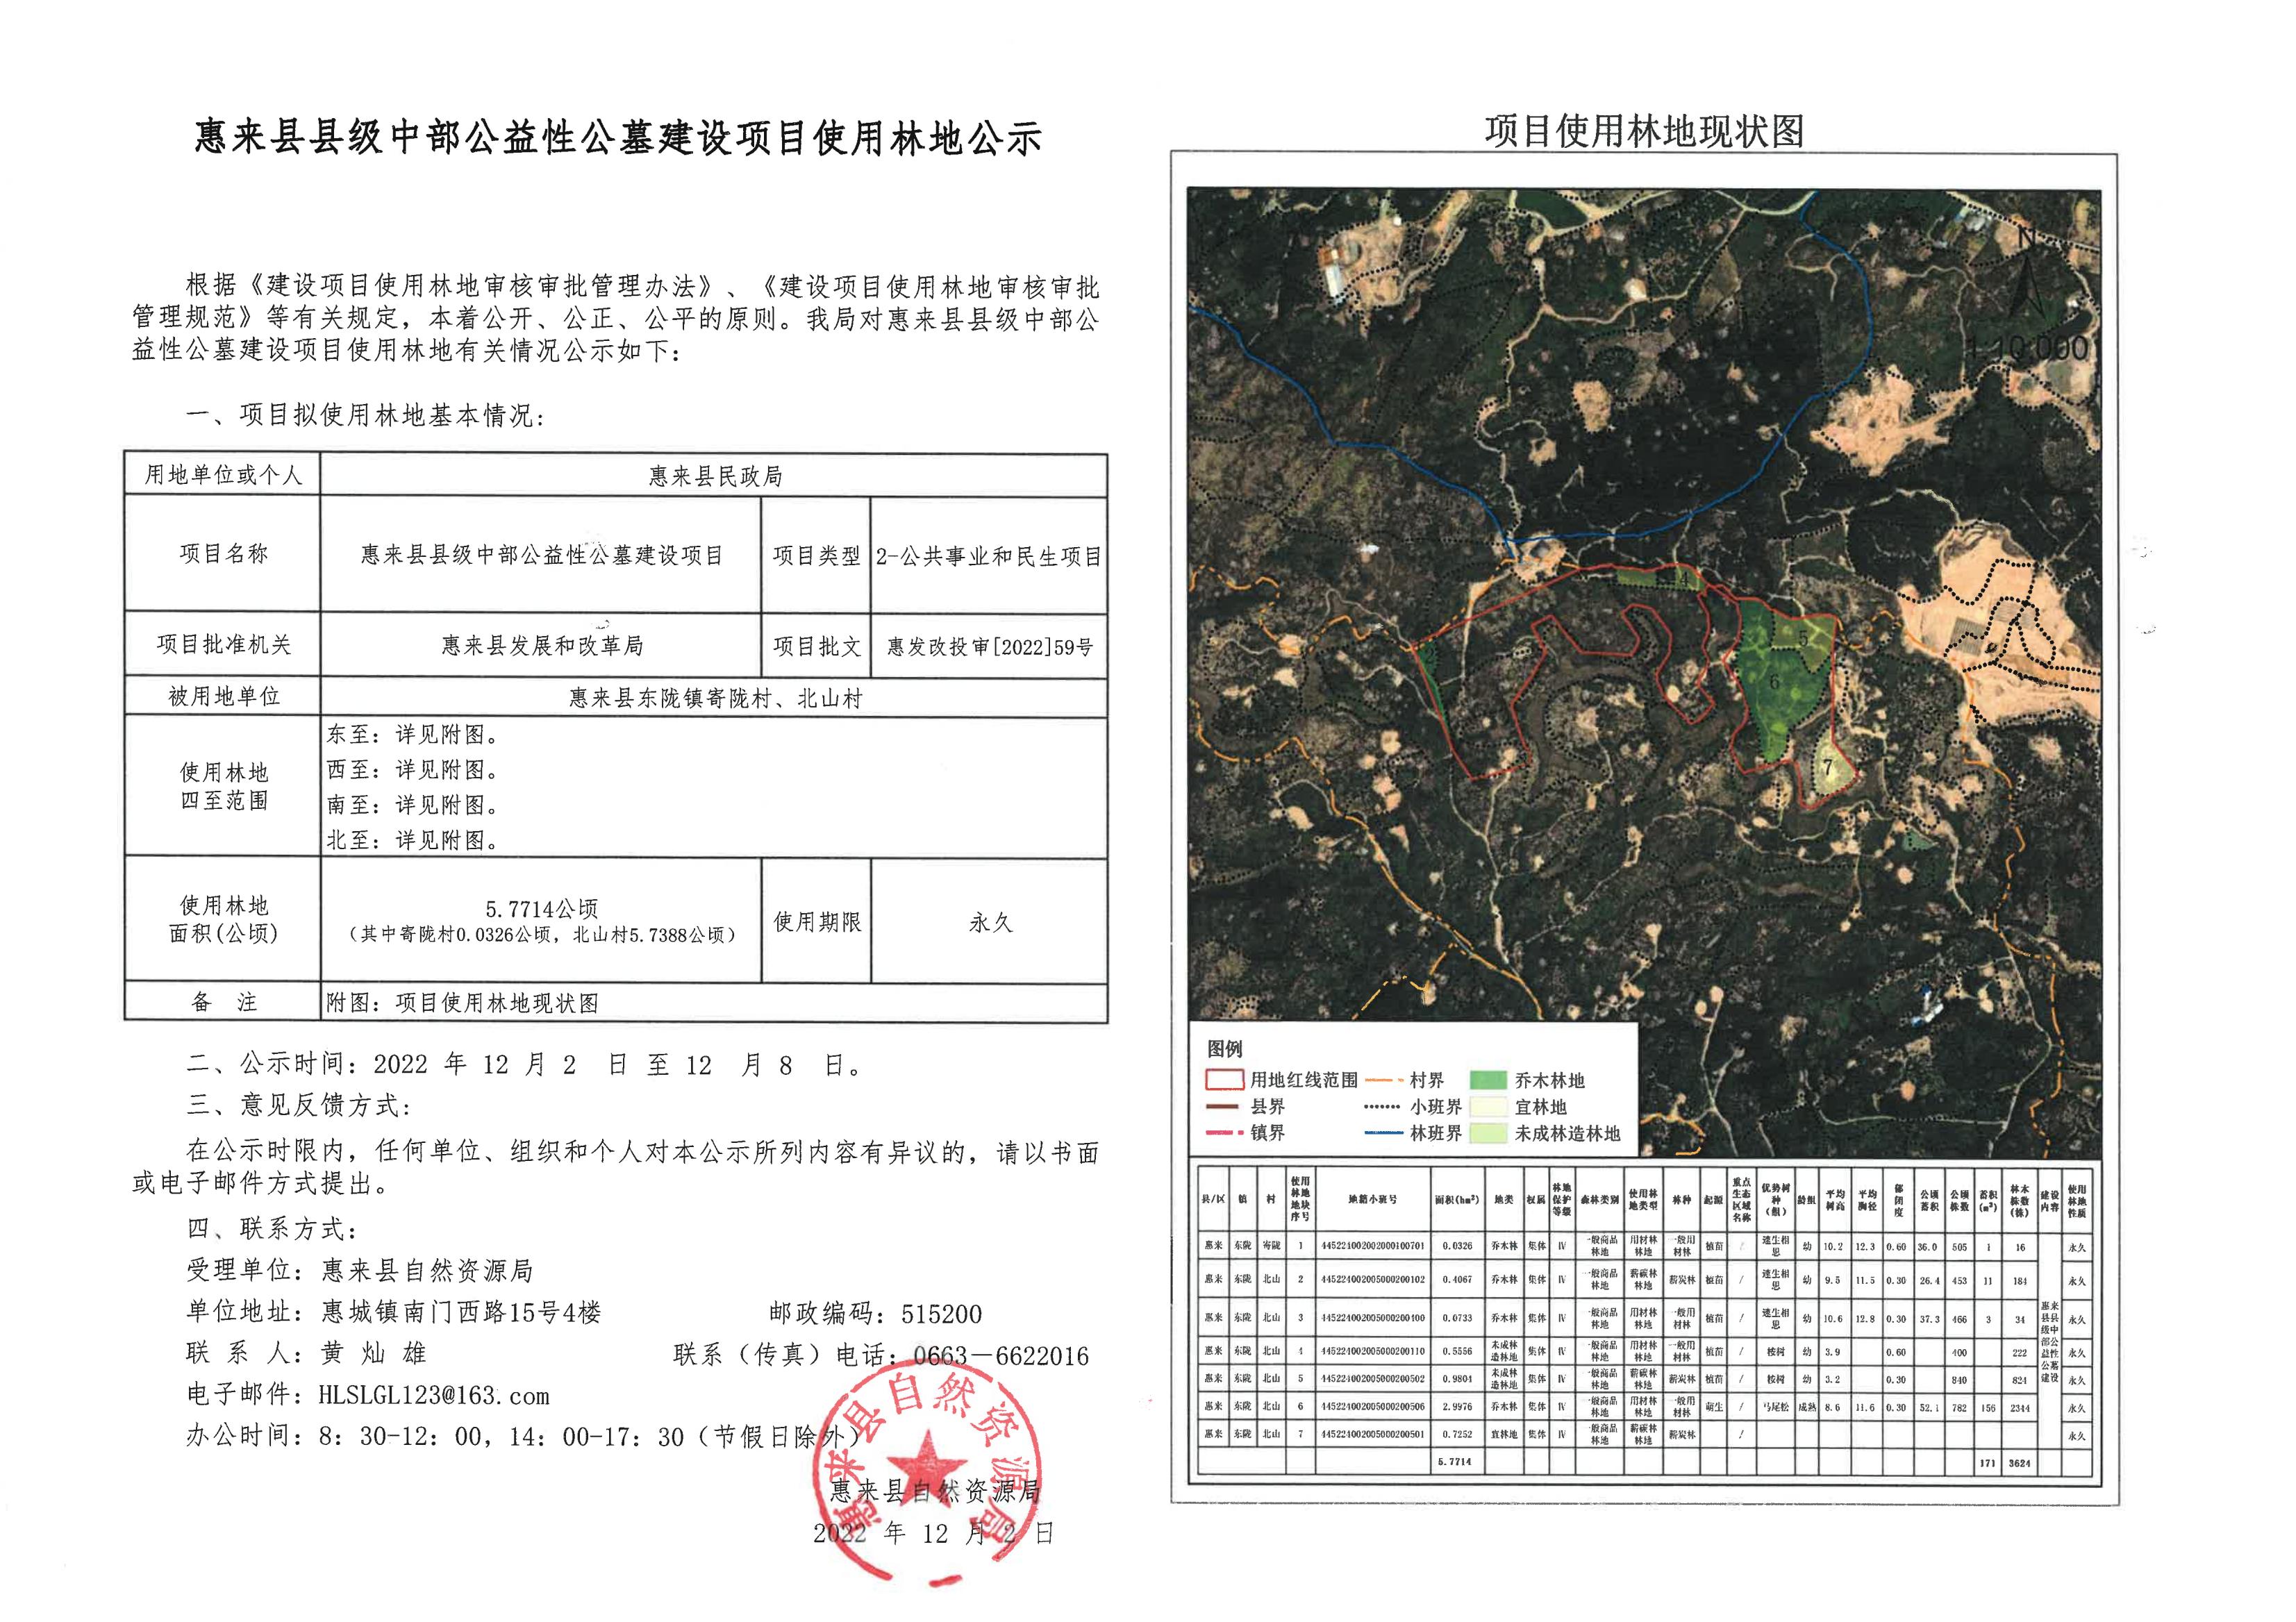 惠来县县级中部公益性公墓建设项目使用林地公示.jpg